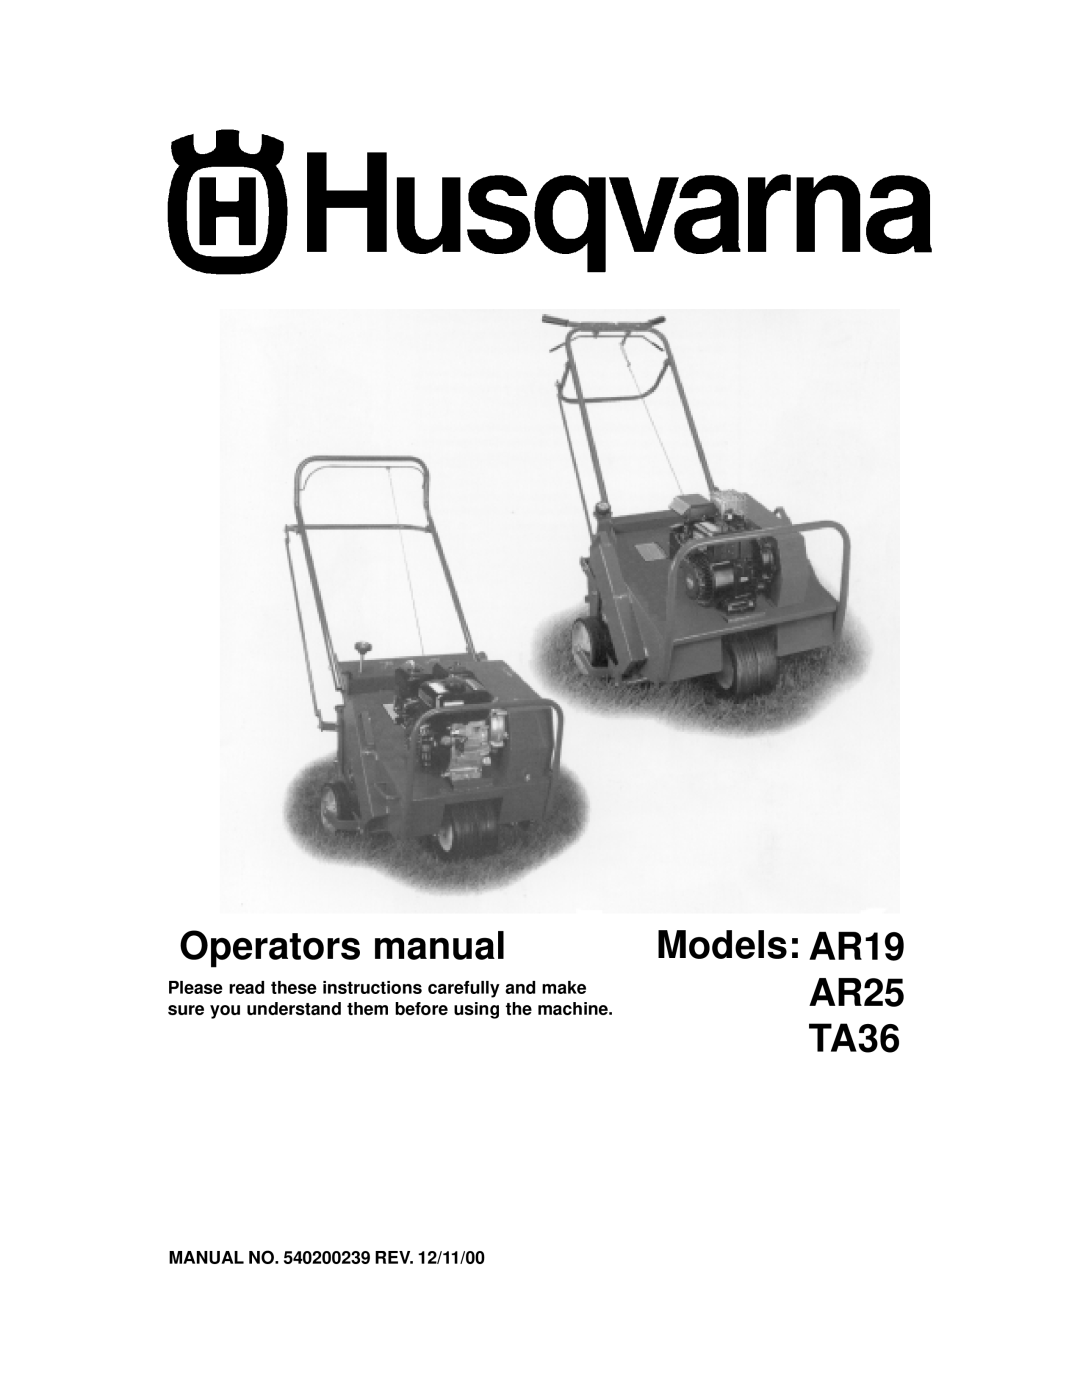 Husqvarna manual MANUAL NO. 540200239 REV. 12/11/00, Operators manual, Models: AR19 AR25 TA36 